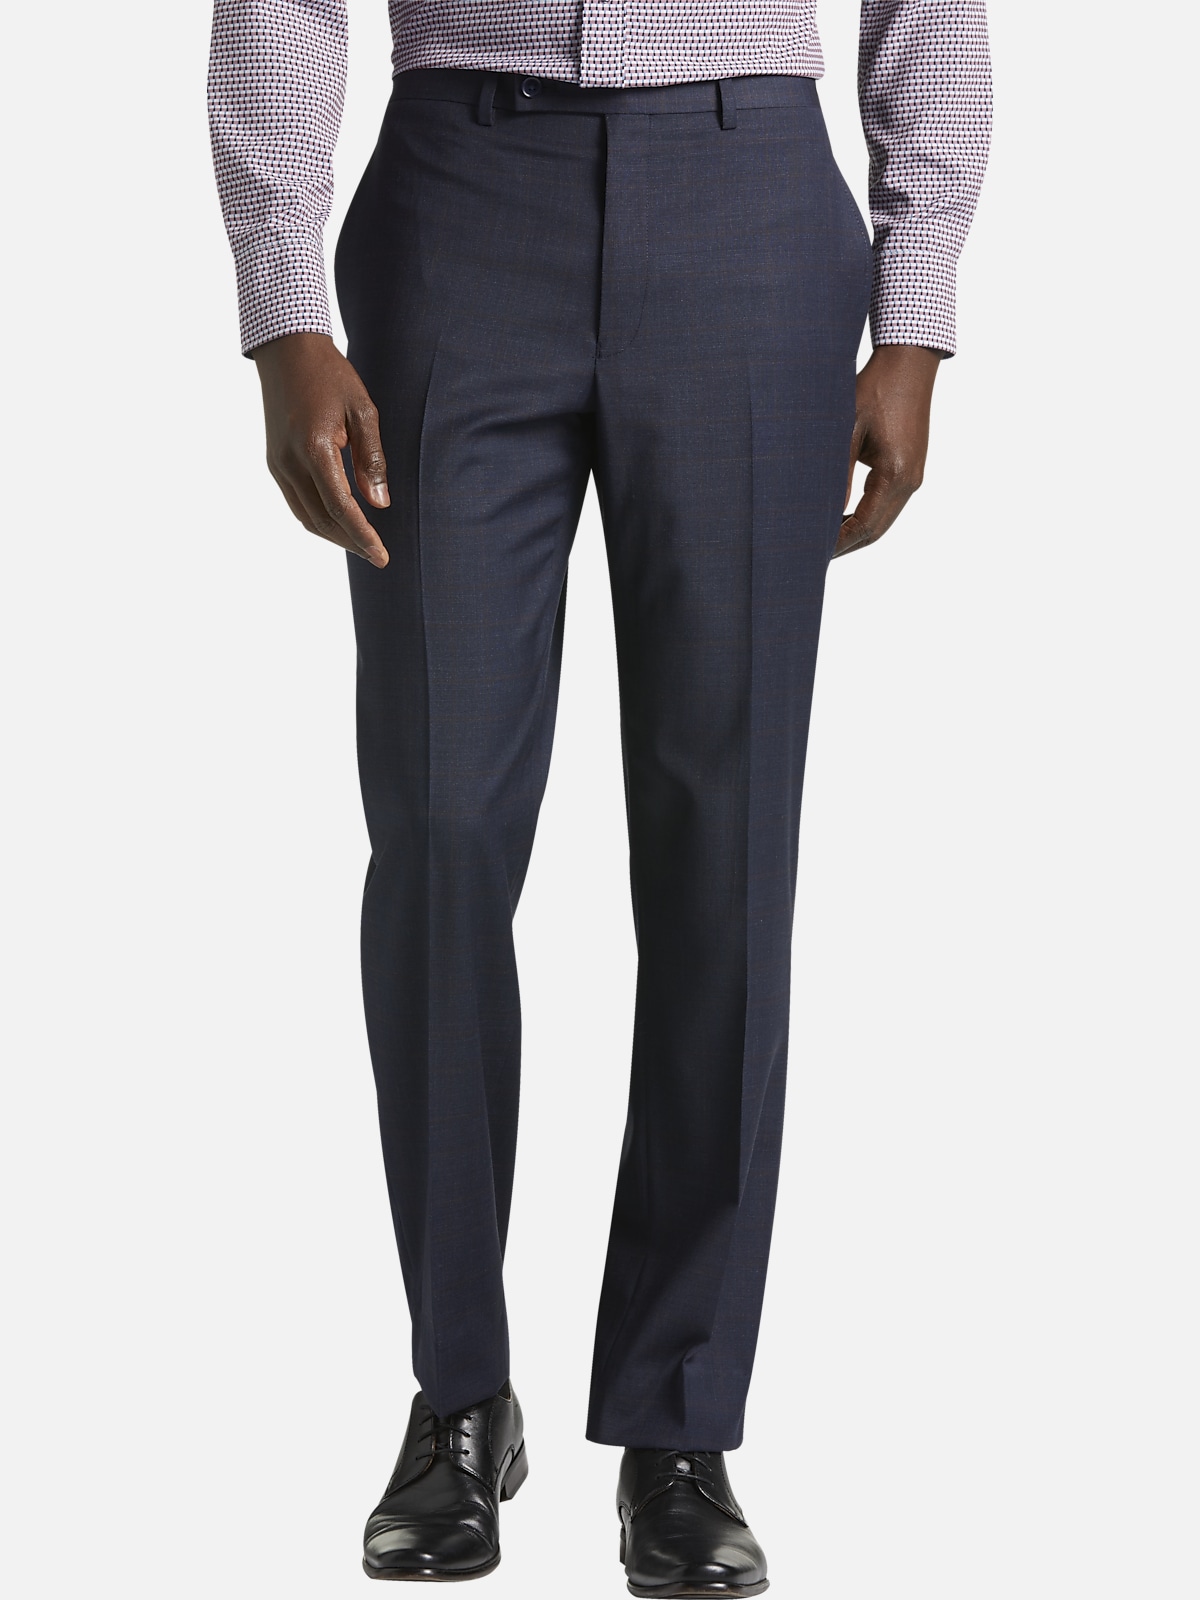 Michael Strahan Classic Fit Suit Separates Pants Plaid | Pants| Men's ...